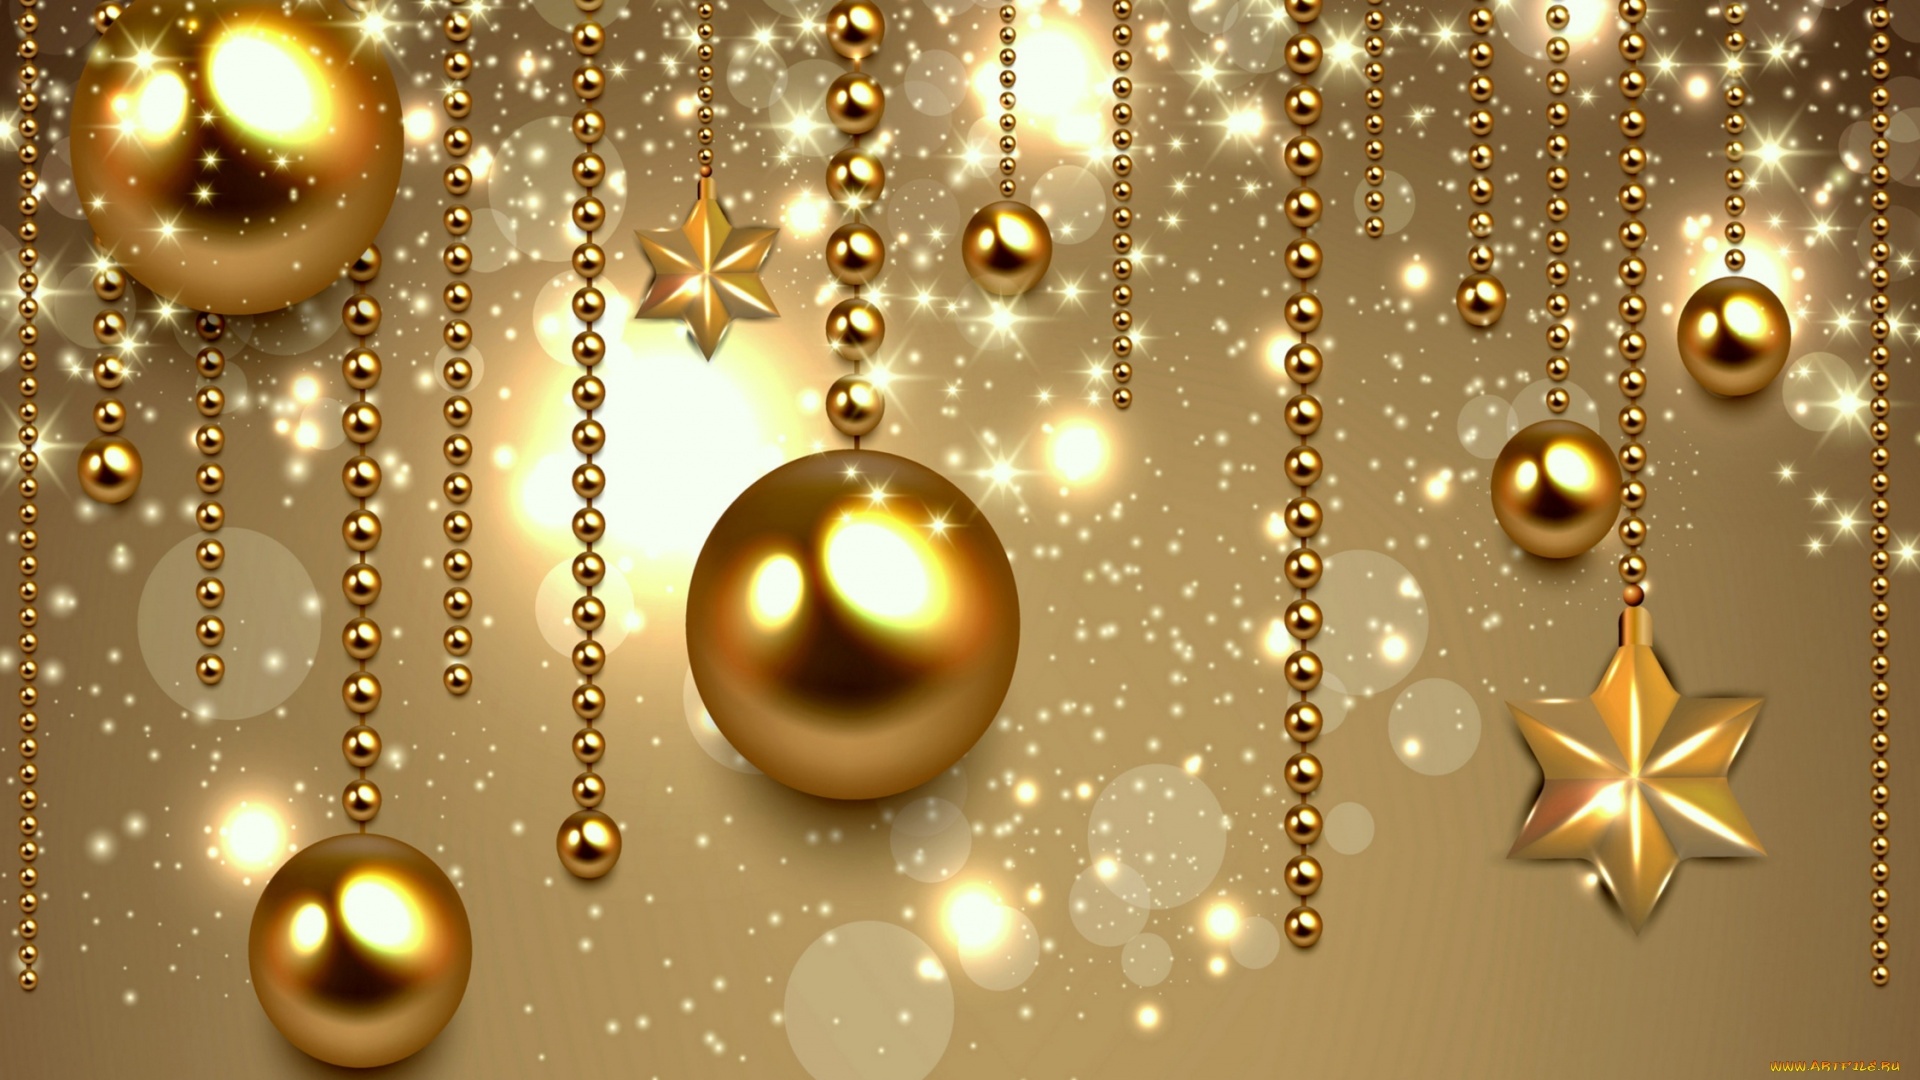 Christmas Gold Image